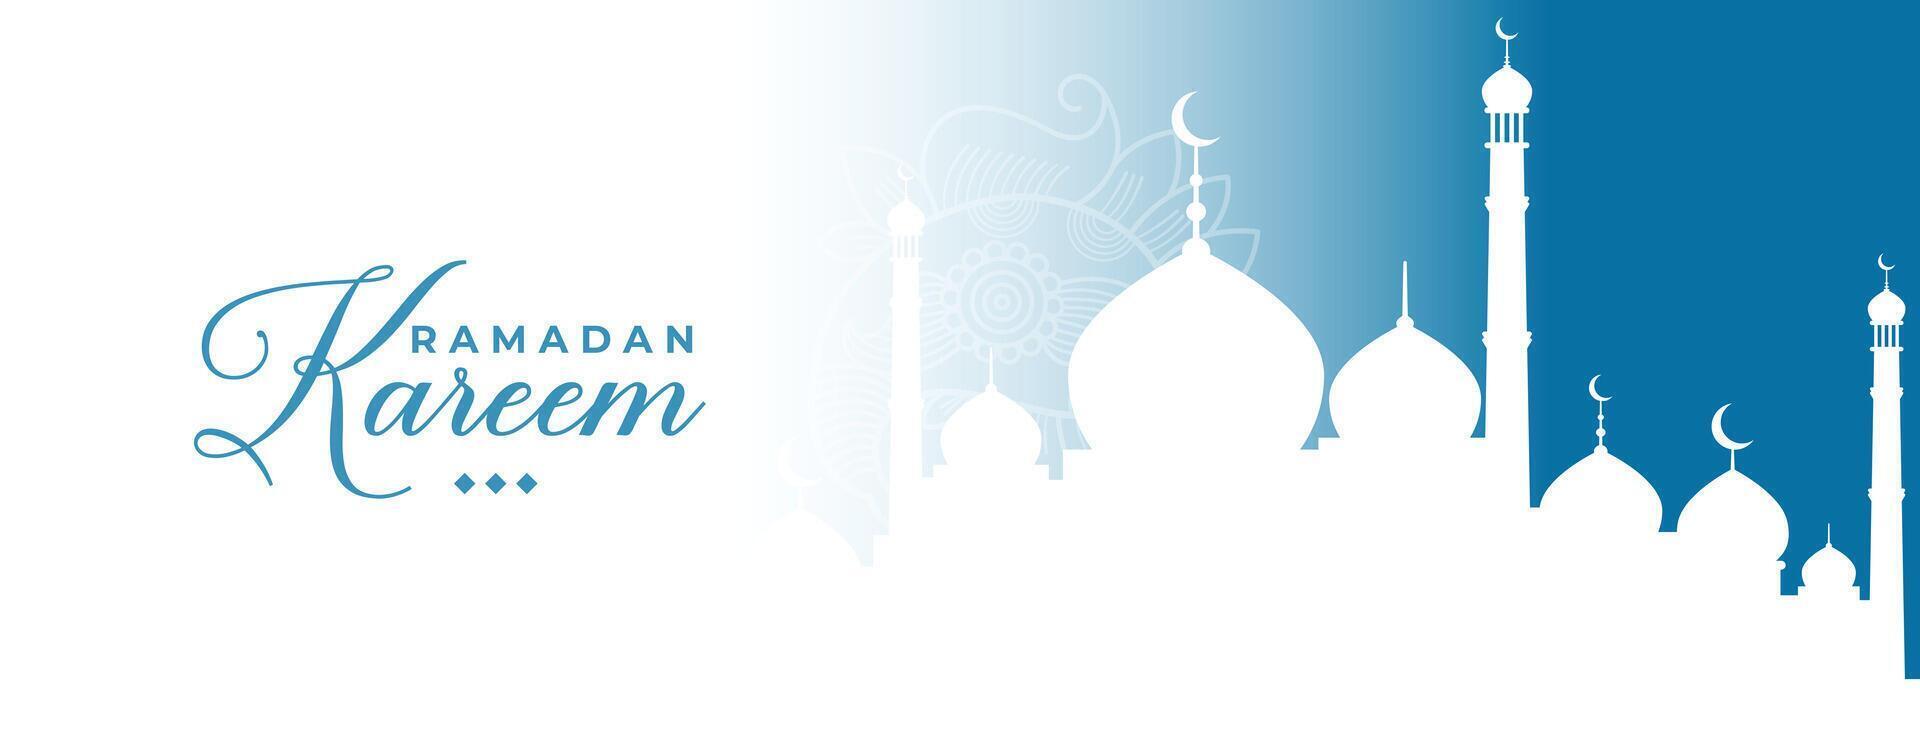 traditionell Ramadan kareem islamisch Banner Design vektor